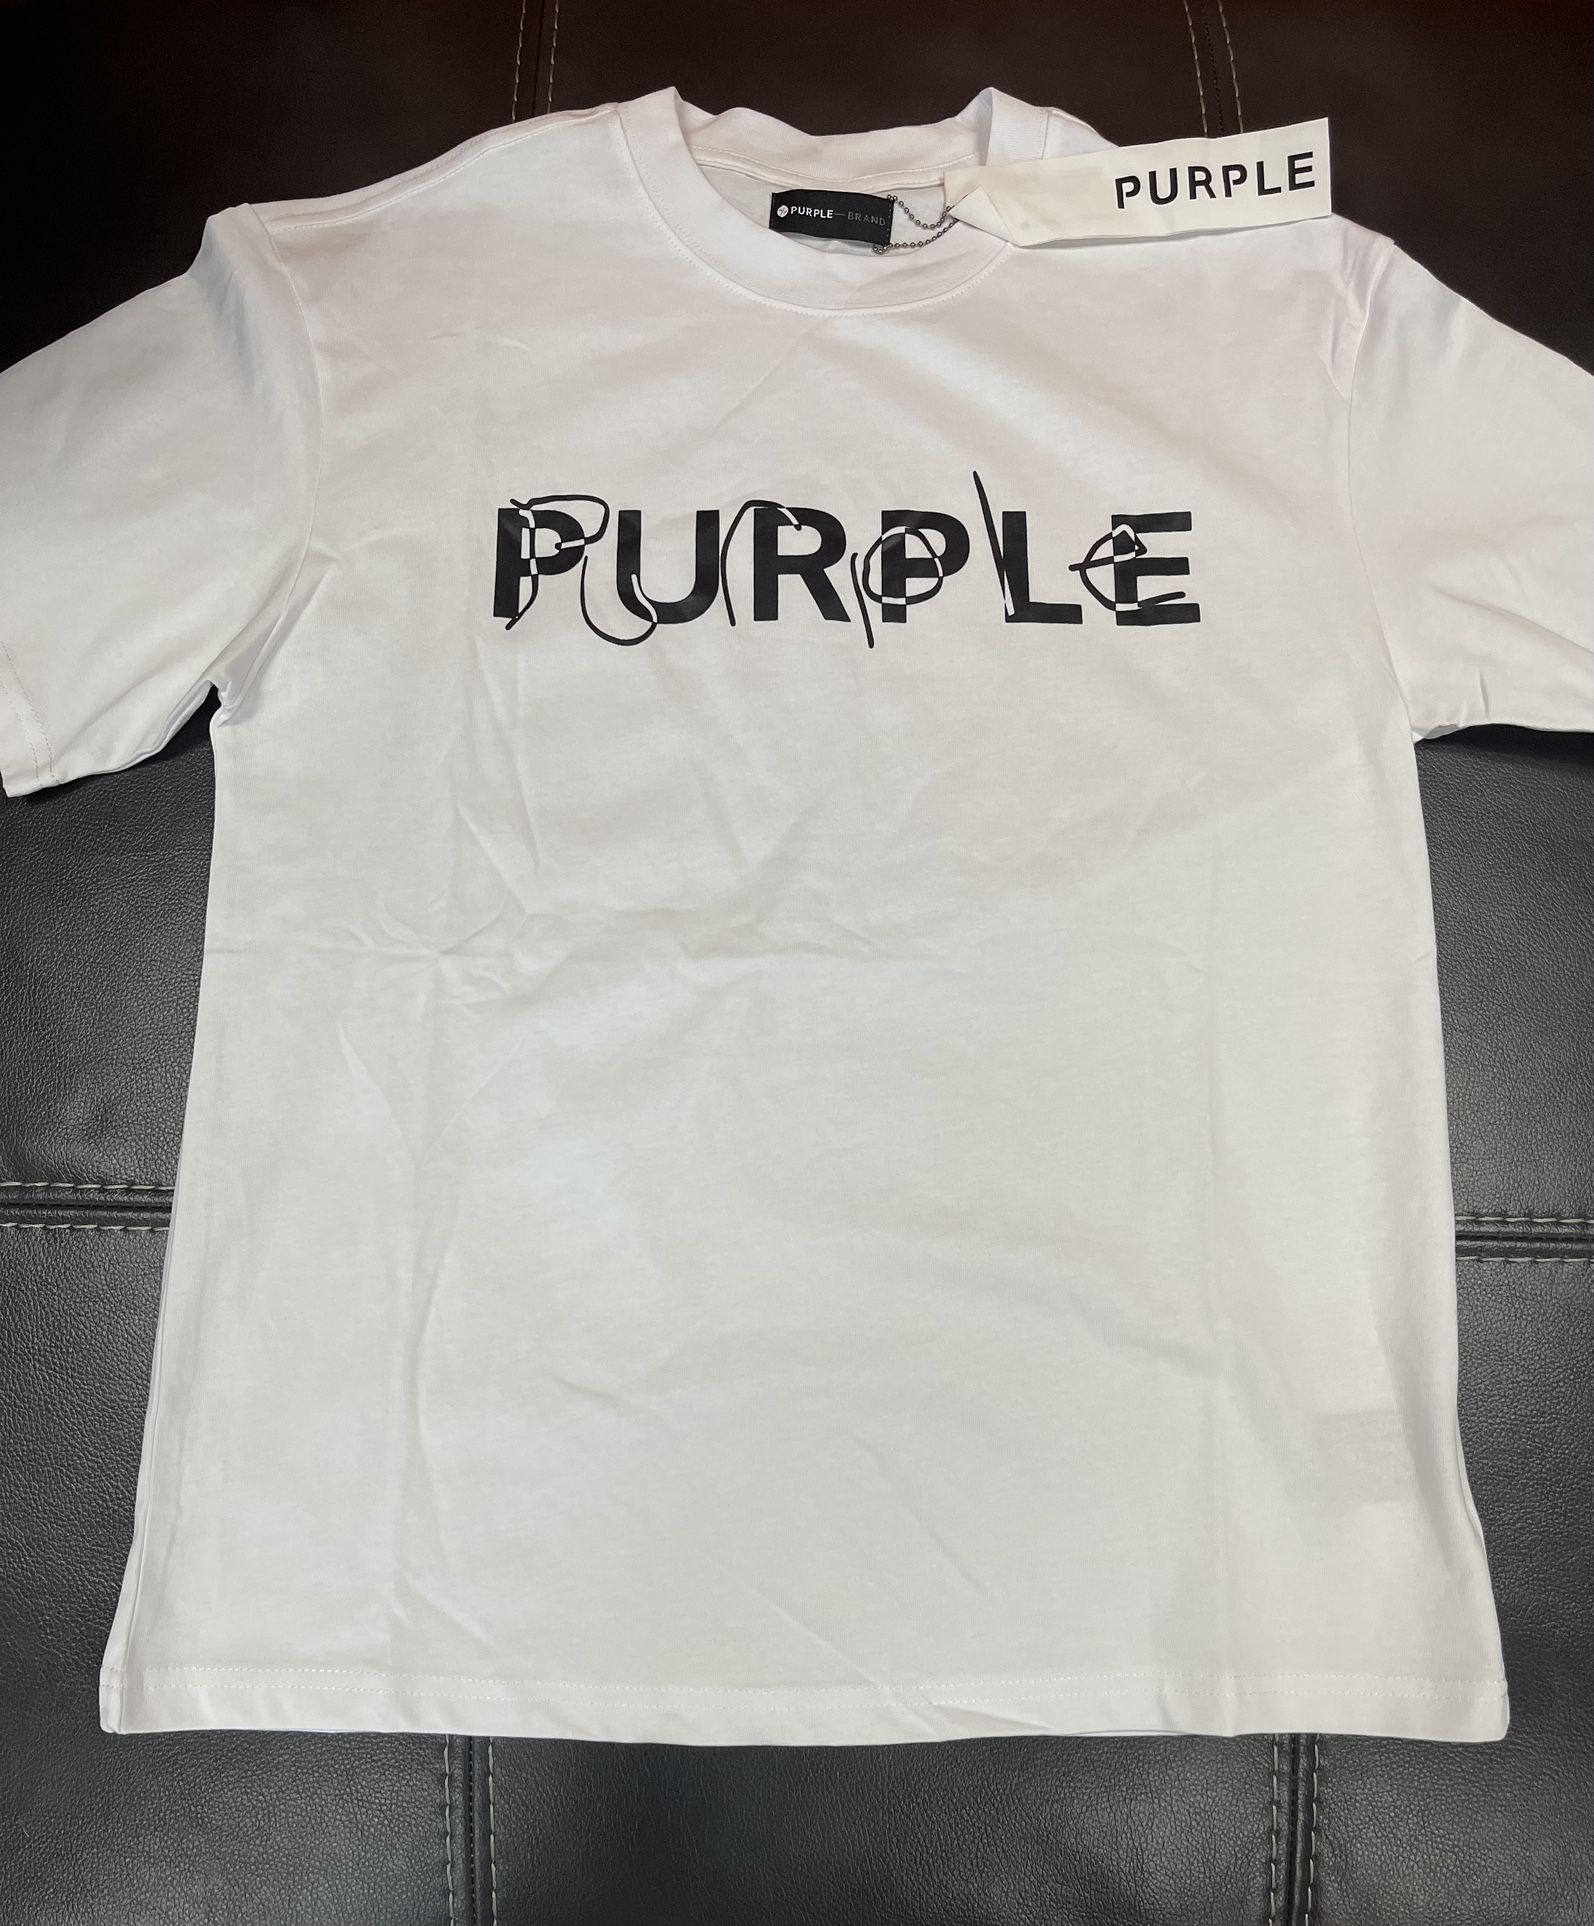 Purple Shirt (sizes Small-3x)